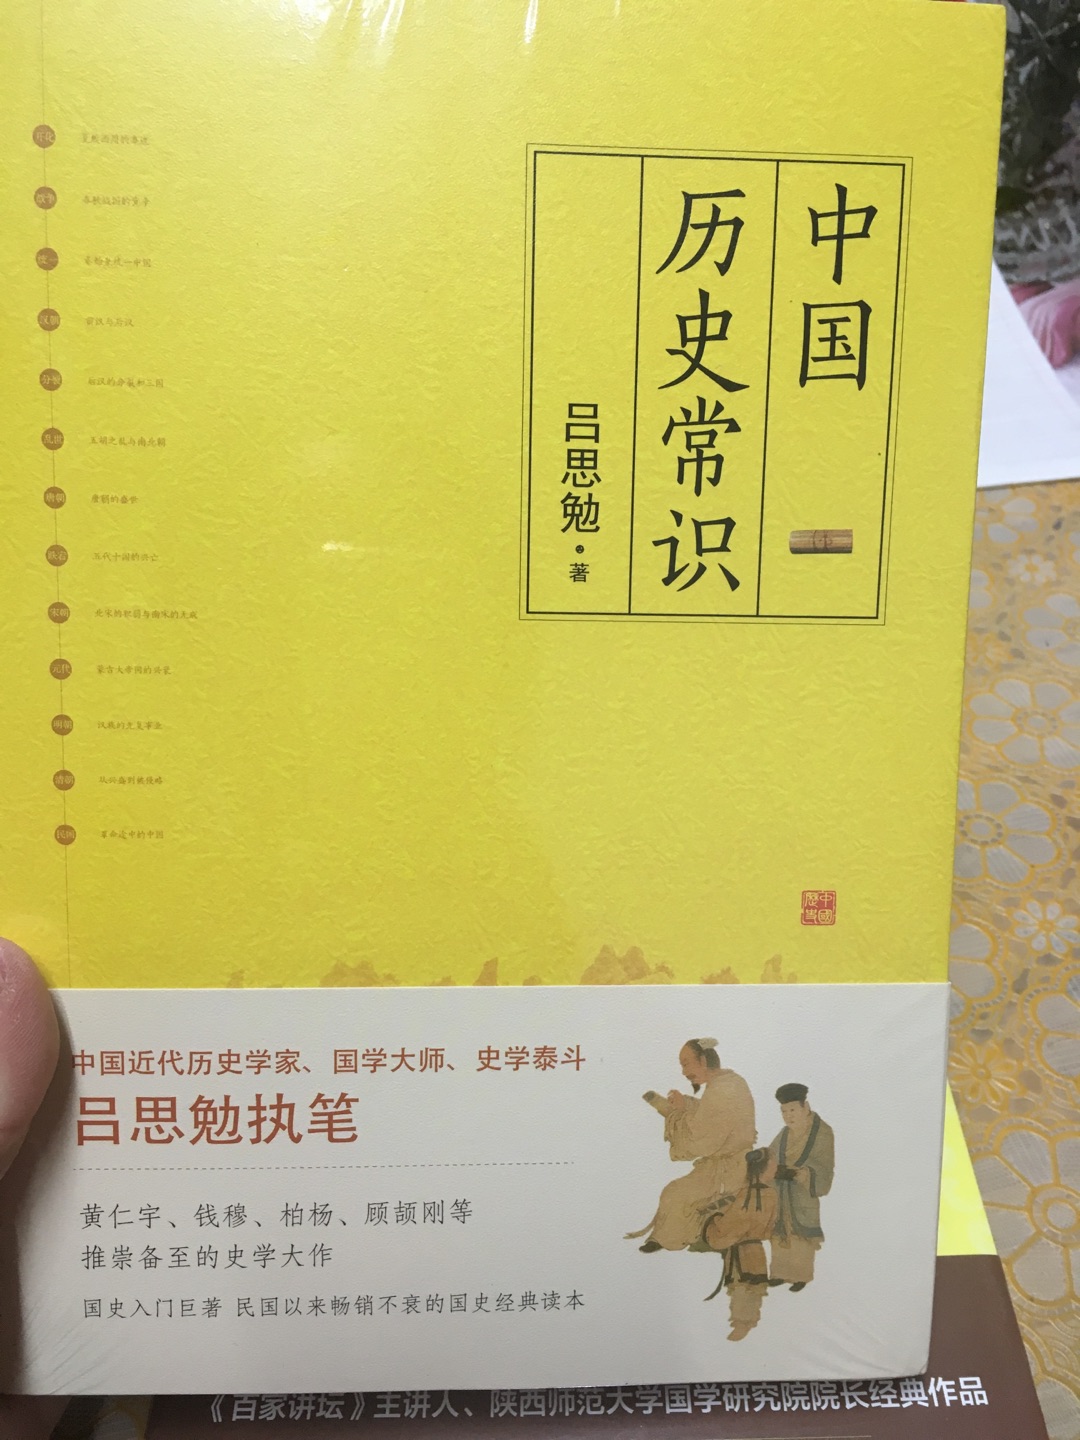 这本书挺好的，内容也很详实，中国历史常识，涵盖面还是比较广泛的！就是纸张略微偏薄了一点点！多学学历史知识对自己是有很大帮助的！